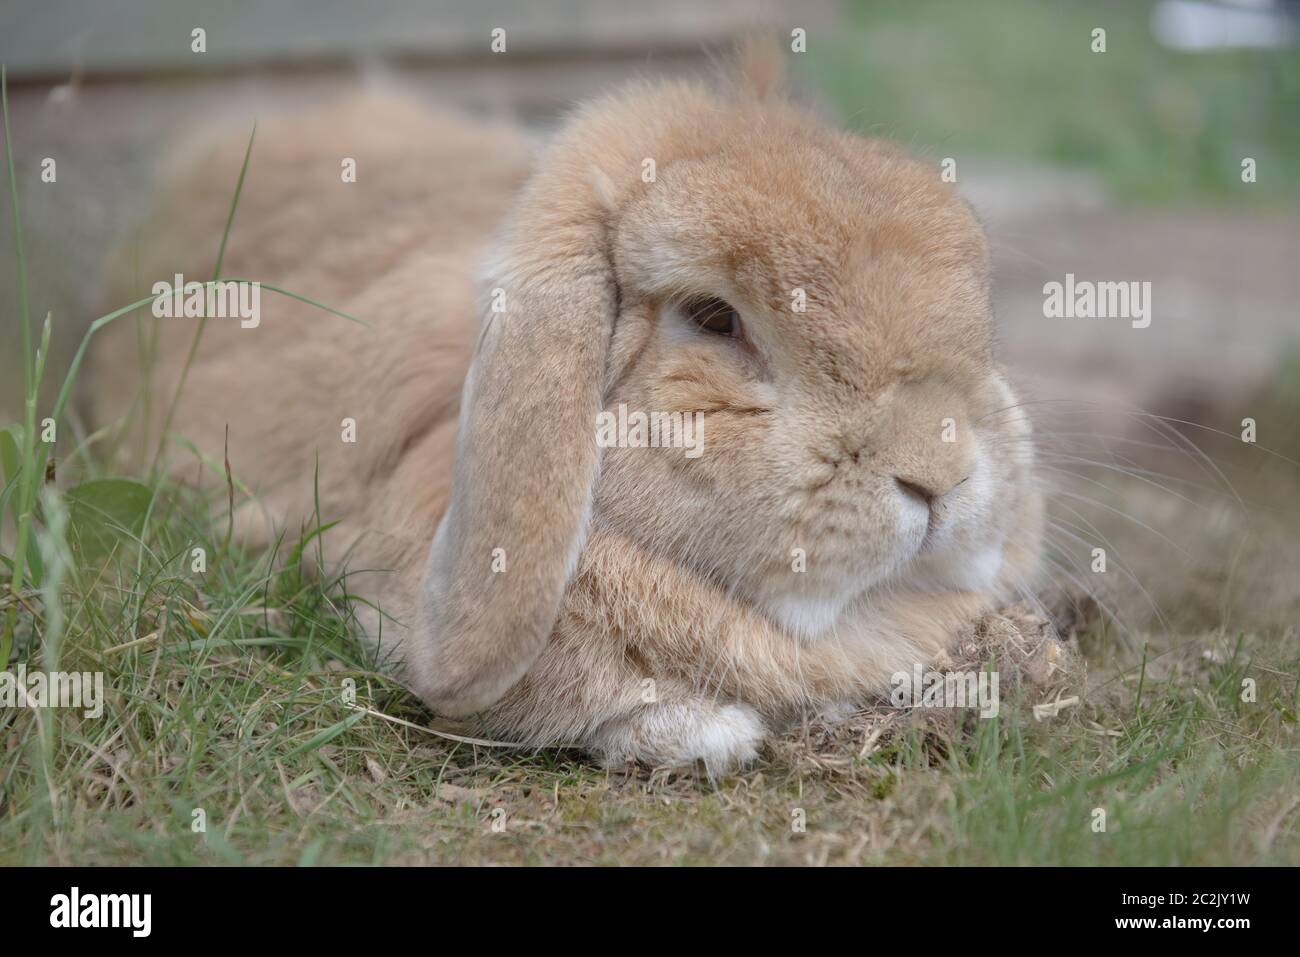 Le lapin nain des pays-bas sablonneux est situé au milieu de l'herbe à broussailles, regardant de façon dozieuse la caméra. Lapin animal très moelleux avec oreilles de lop. touffes de fourrure montrant. Banque D'Images